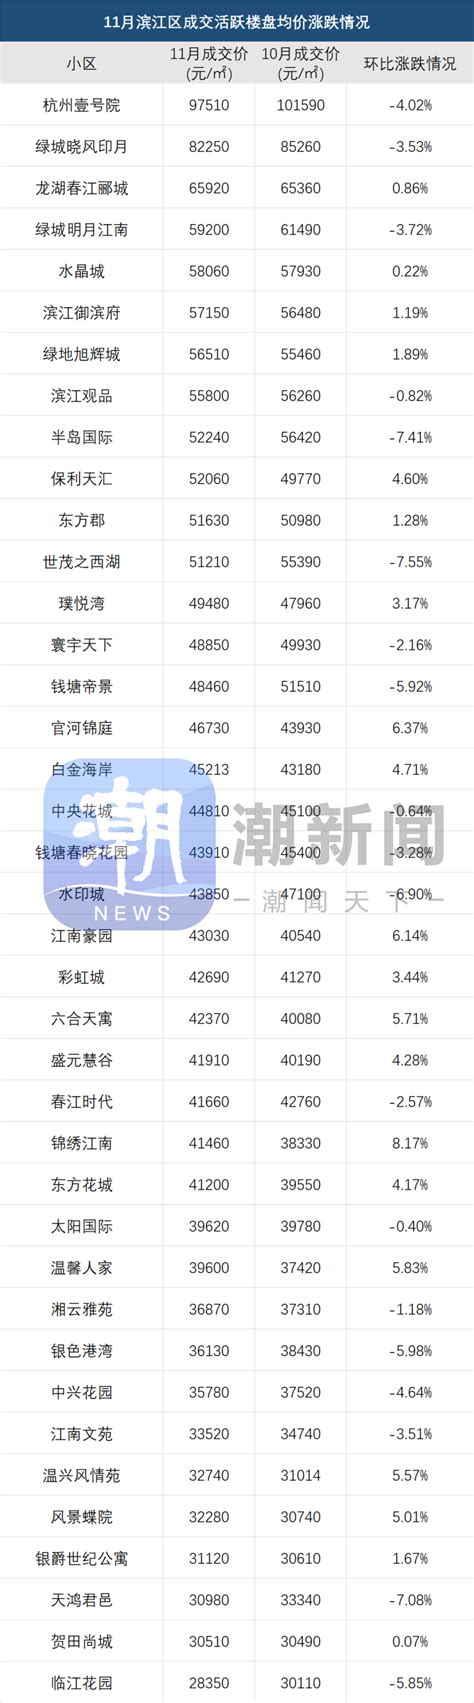 2013杭州房价走势图 1-6月走势平稳 - 房天下买房知识